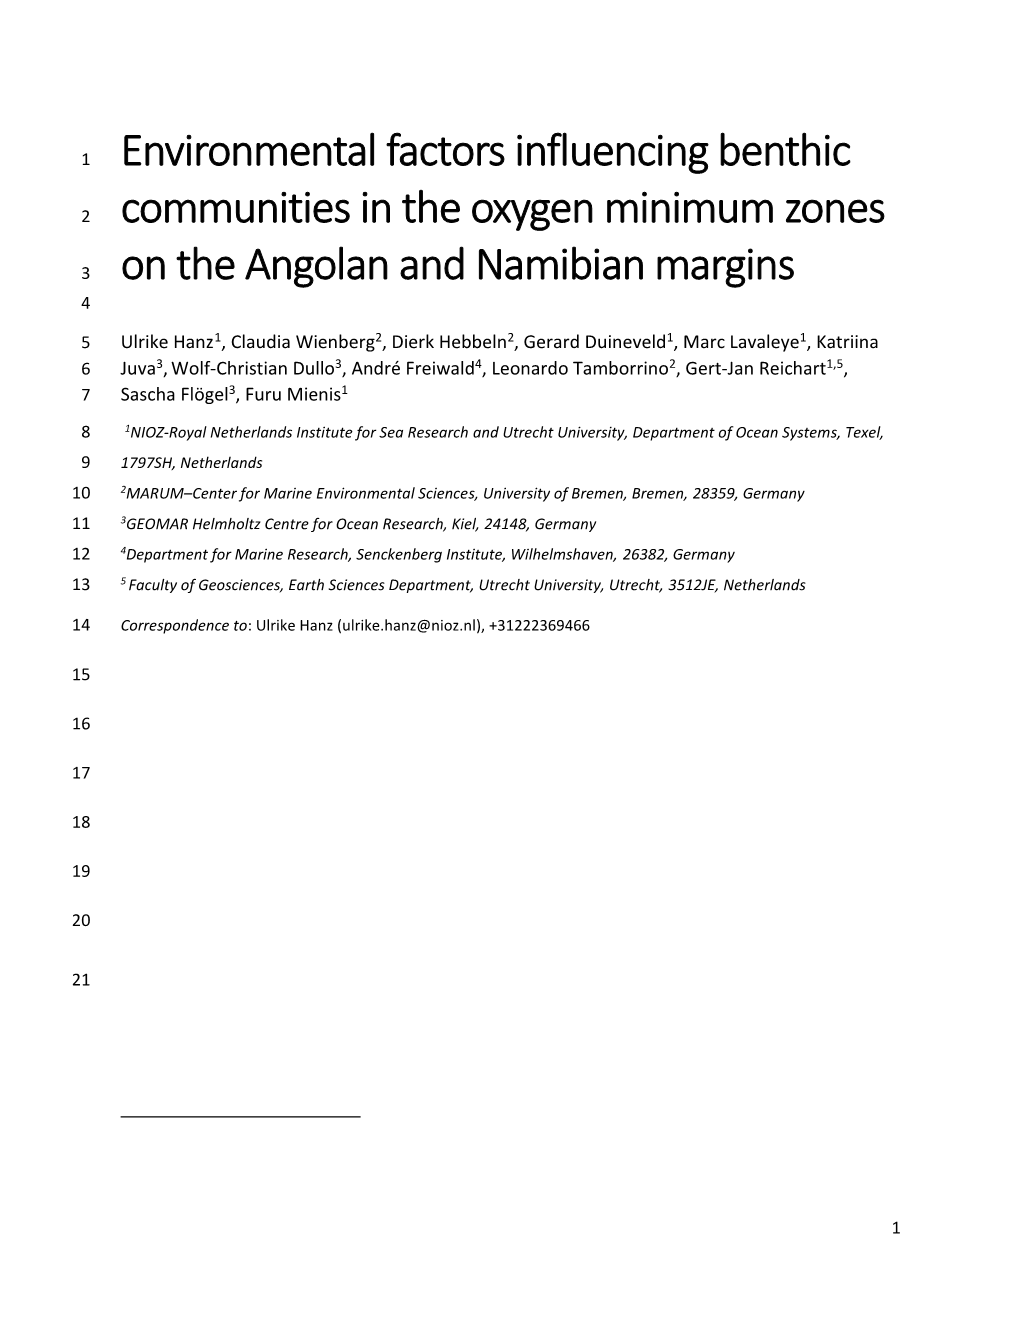 Environmental Factors Influencing Benthic Communities in the Oxygen